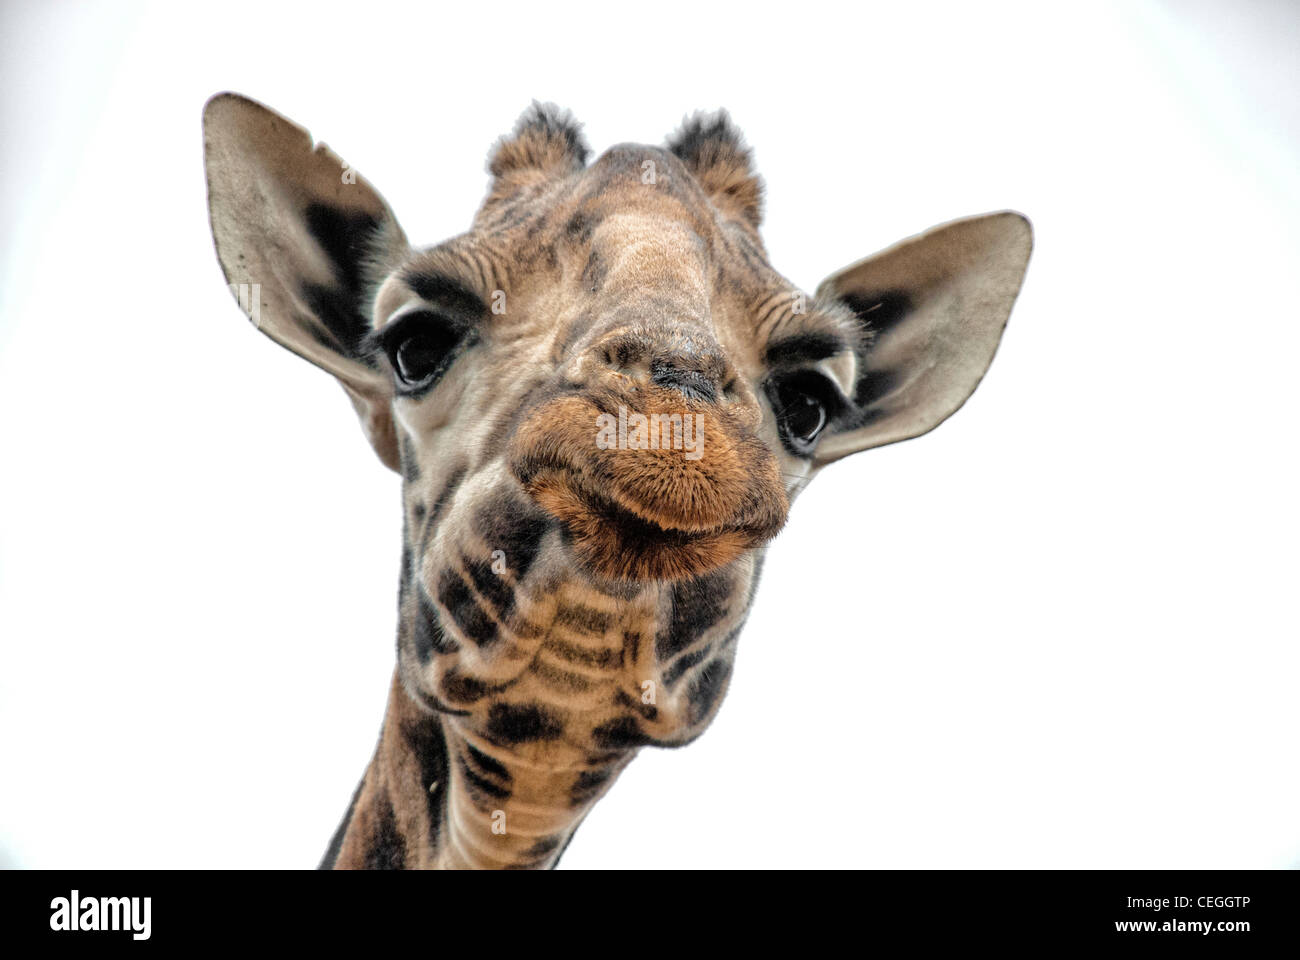 Rothschild Giraffe, Kenya, Africa Stock Photo